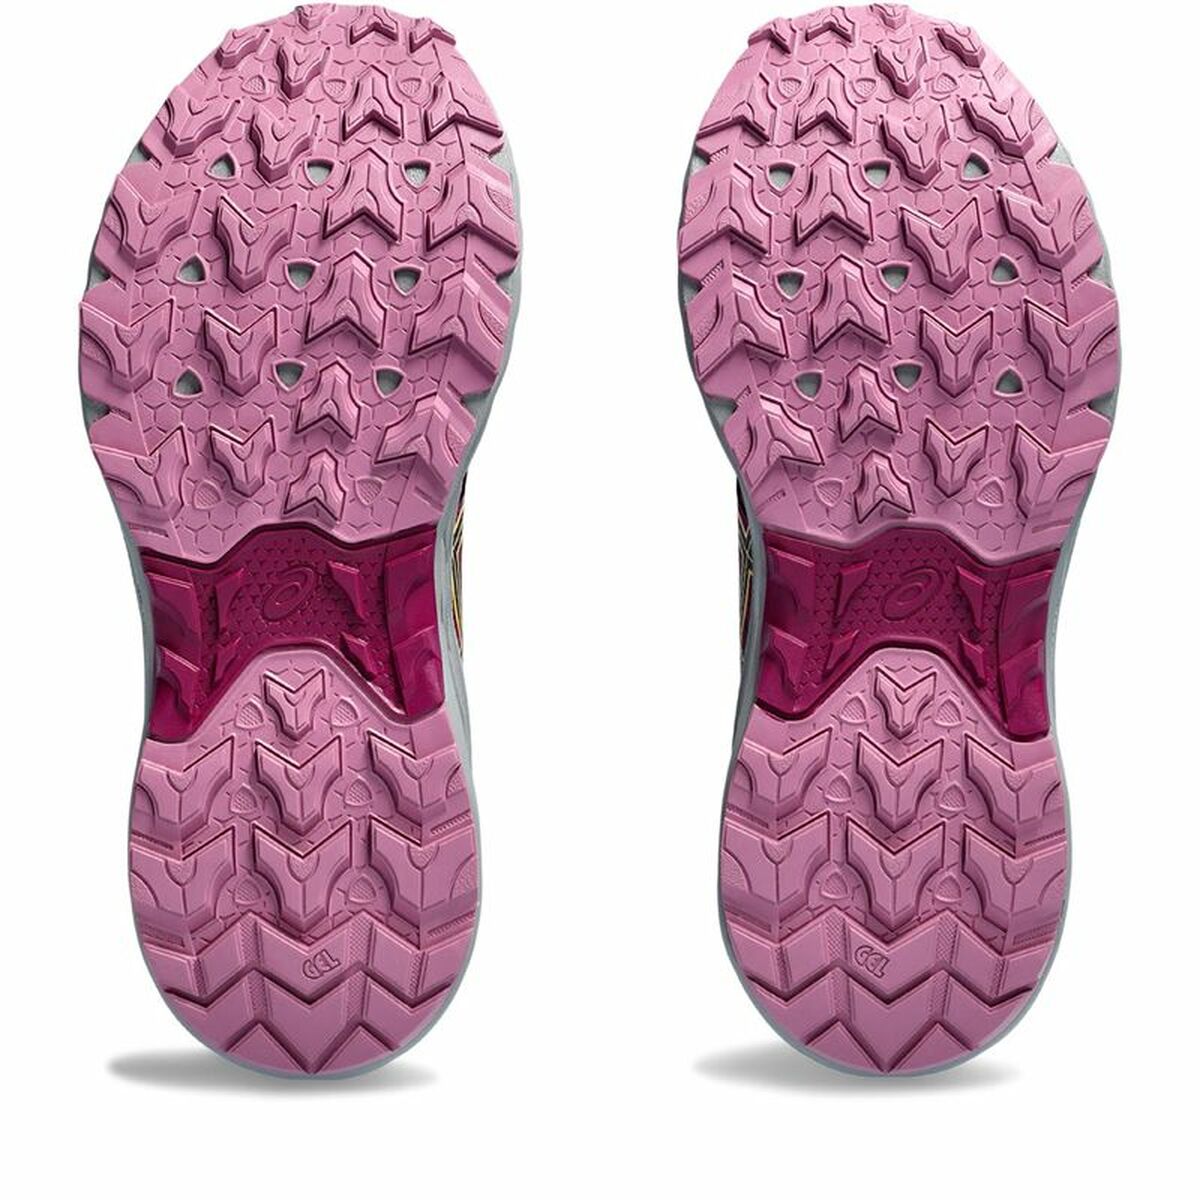 Kaufe Laufschuhe für Damen Asics Gel-Venture 9 Pink bei AWK Flagship um € 78.00